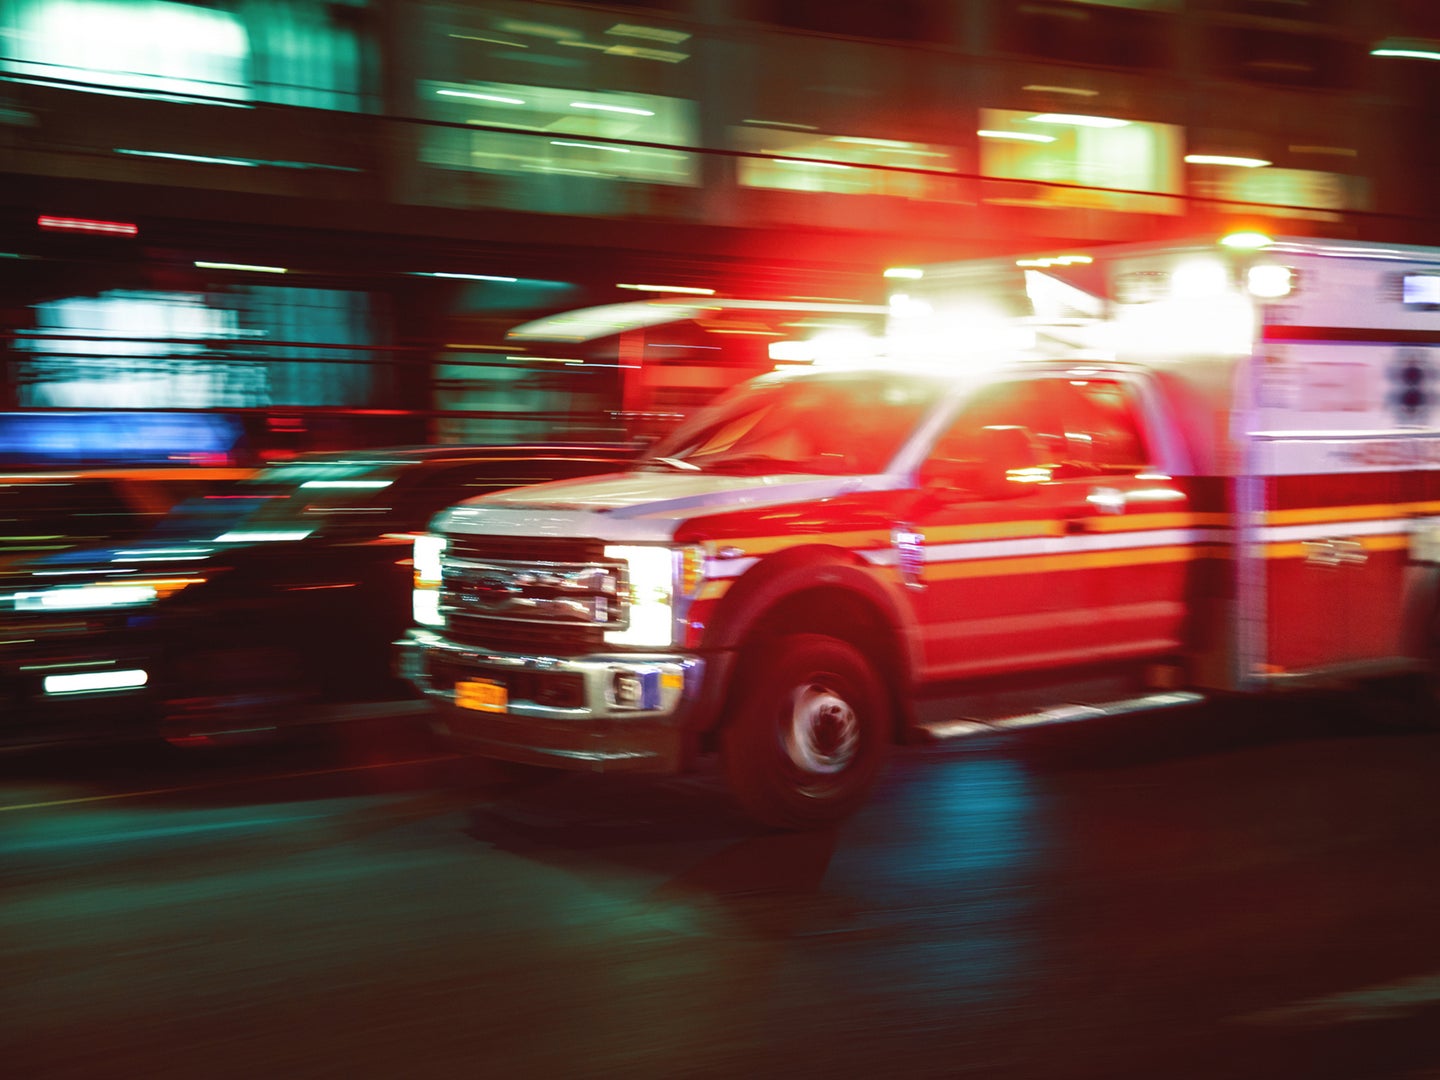 Blurry photo of an ambulance.